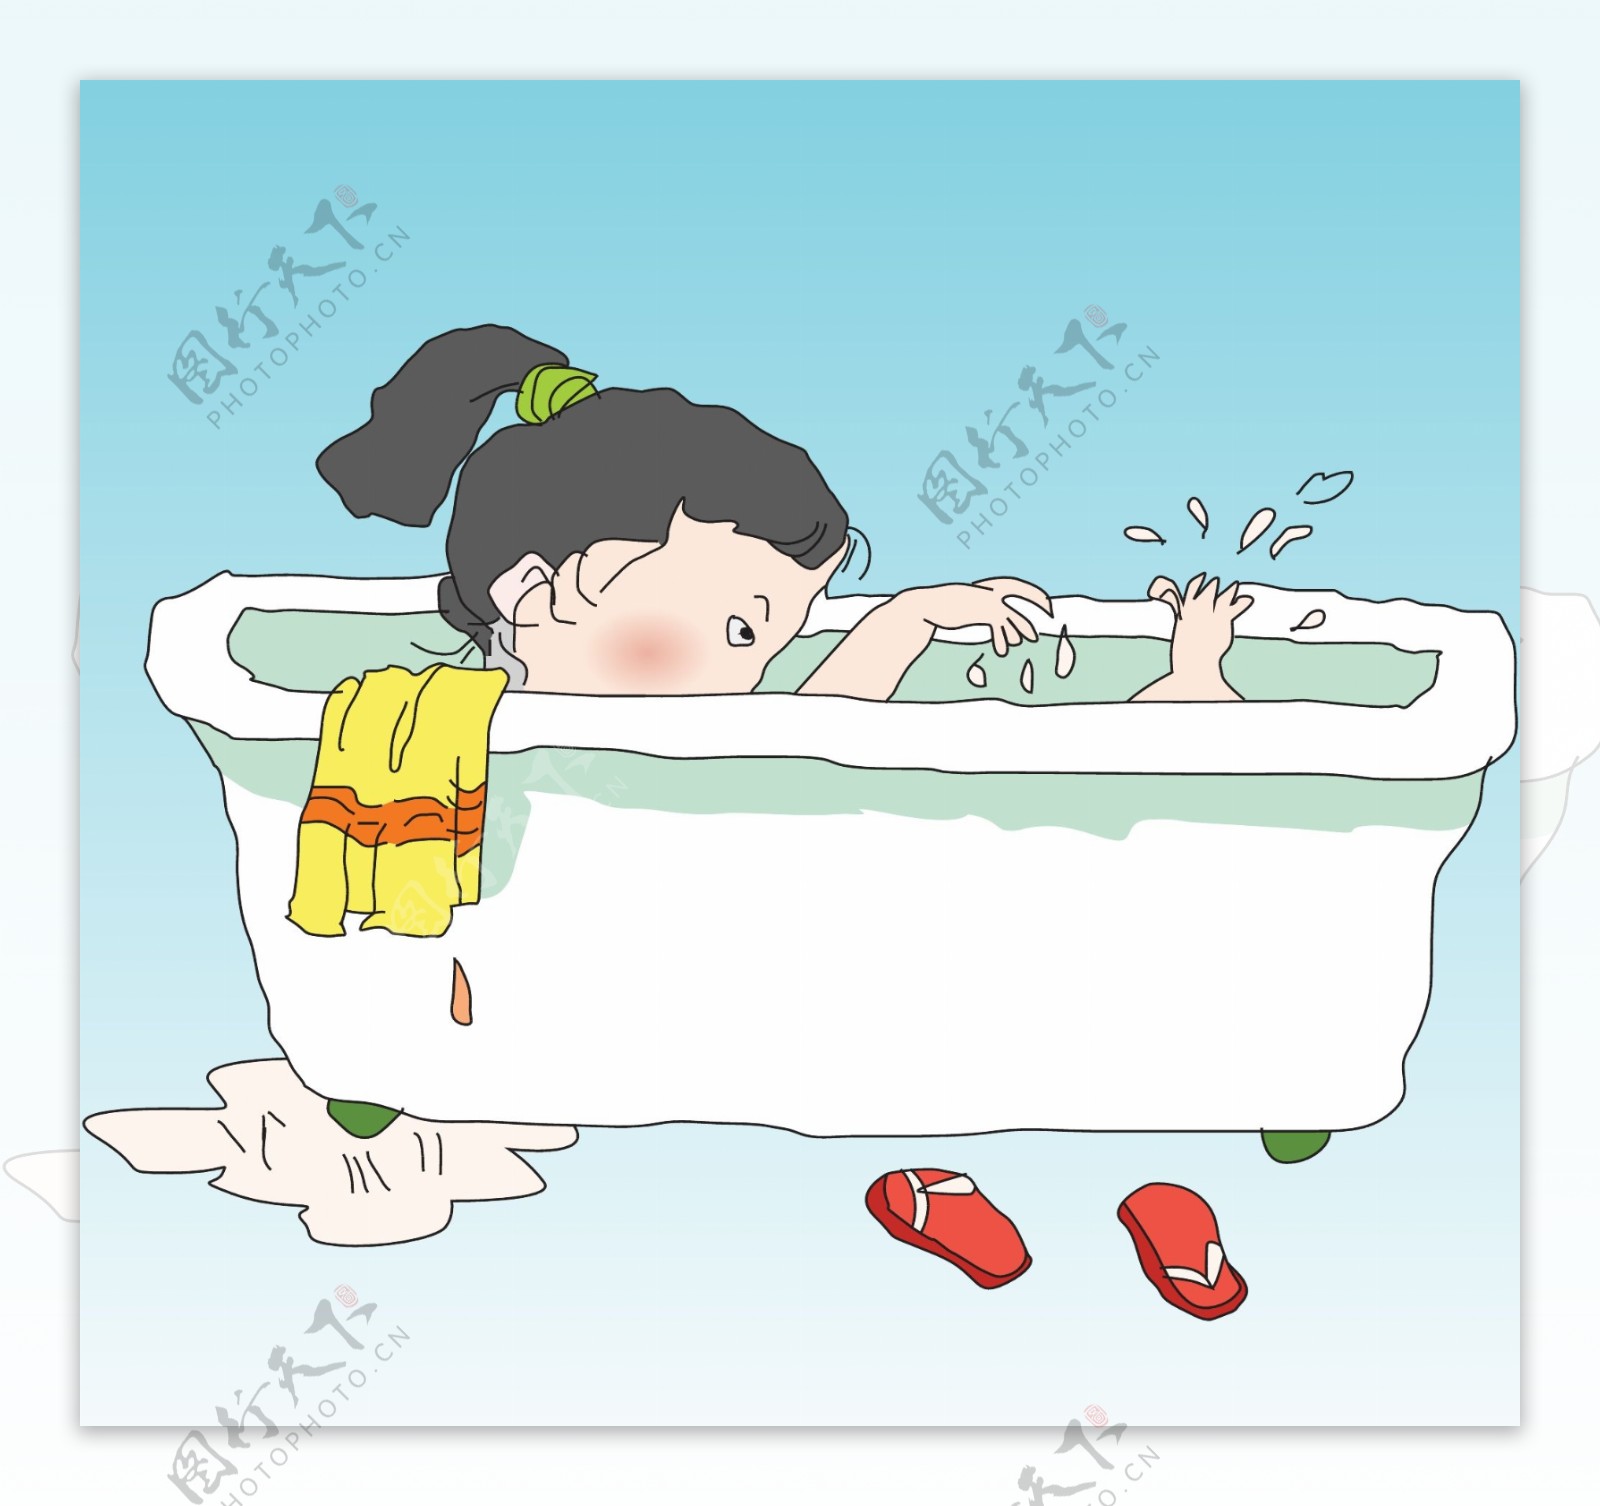 亚洲女孩在户外洗澡 库存图片. 图片 包括有 淋浴, 绿色, 愉快, 头发, 背包, 女性, 皮肤, 卫生学 - 168762467